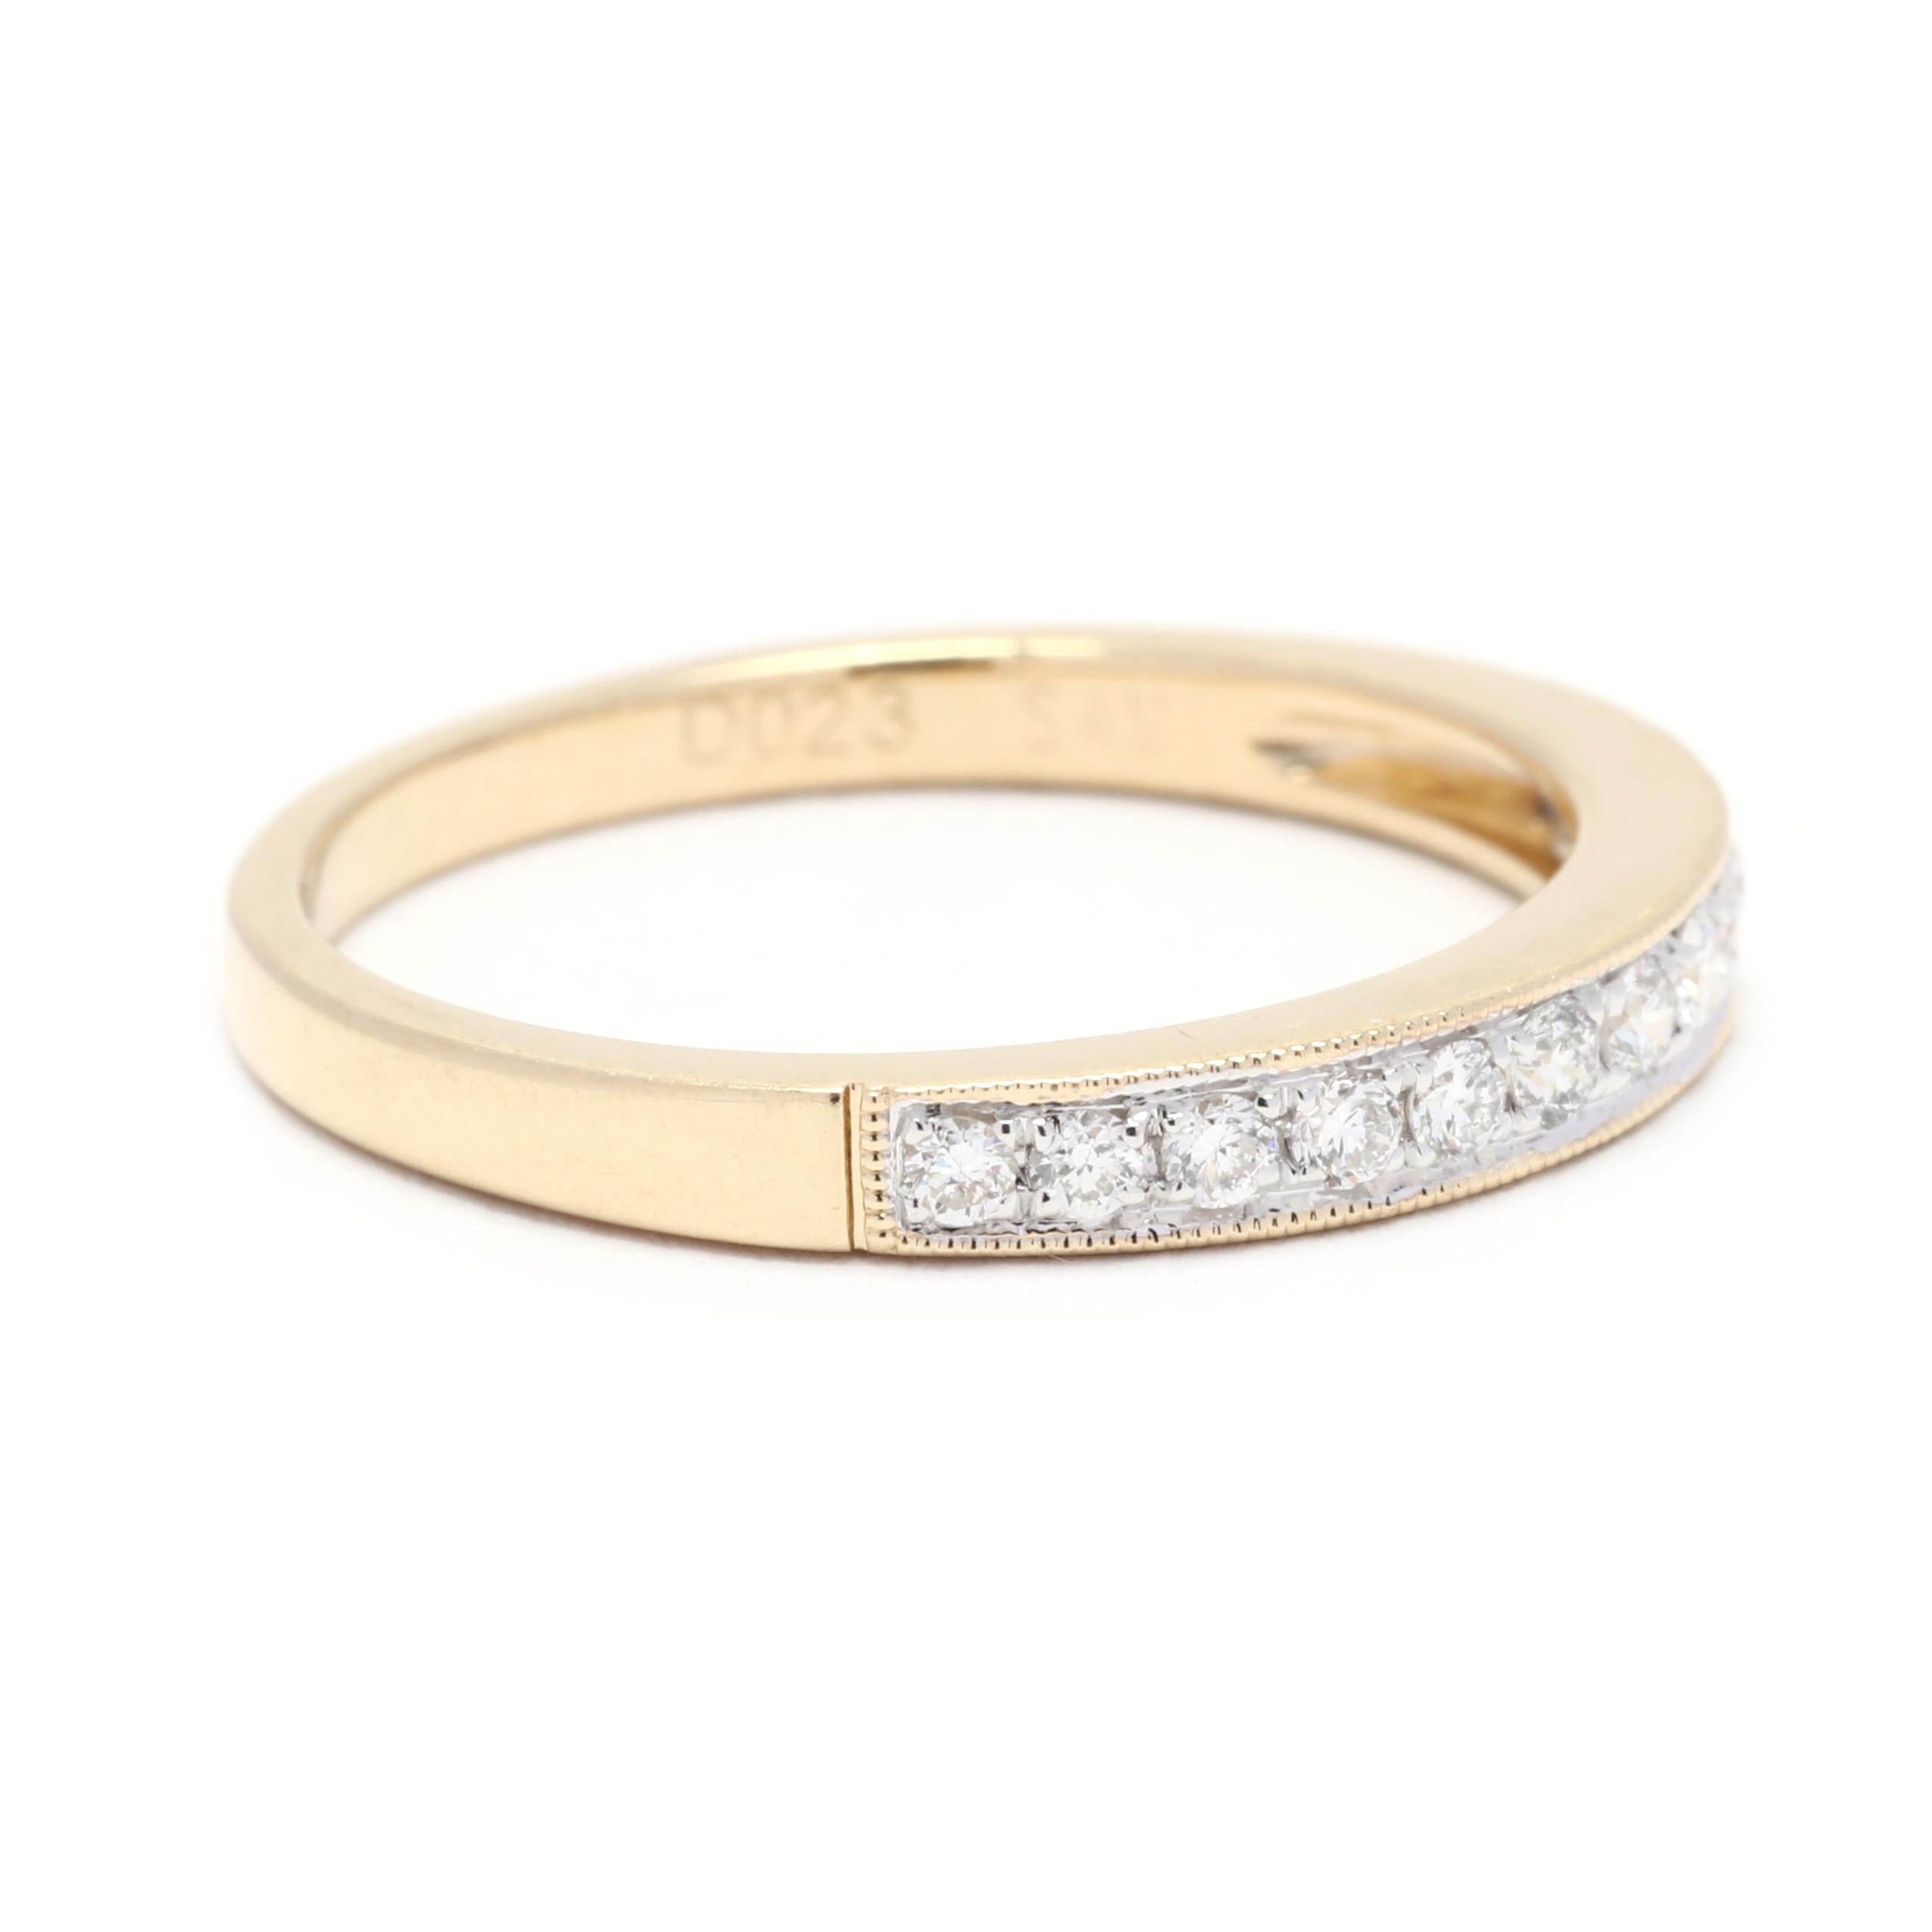 Dieser zarte und schöne Diamant-Trauring ist die perfekte Ergänzung zu jeder stapelbaren Ringkollektion. Dieser Ring ist aus 14-karätigem Gelbgold gefertigt und enthält insgesamt 0,23 Karat Diamanten im Rundschliff. Die Diamanten sind in einem